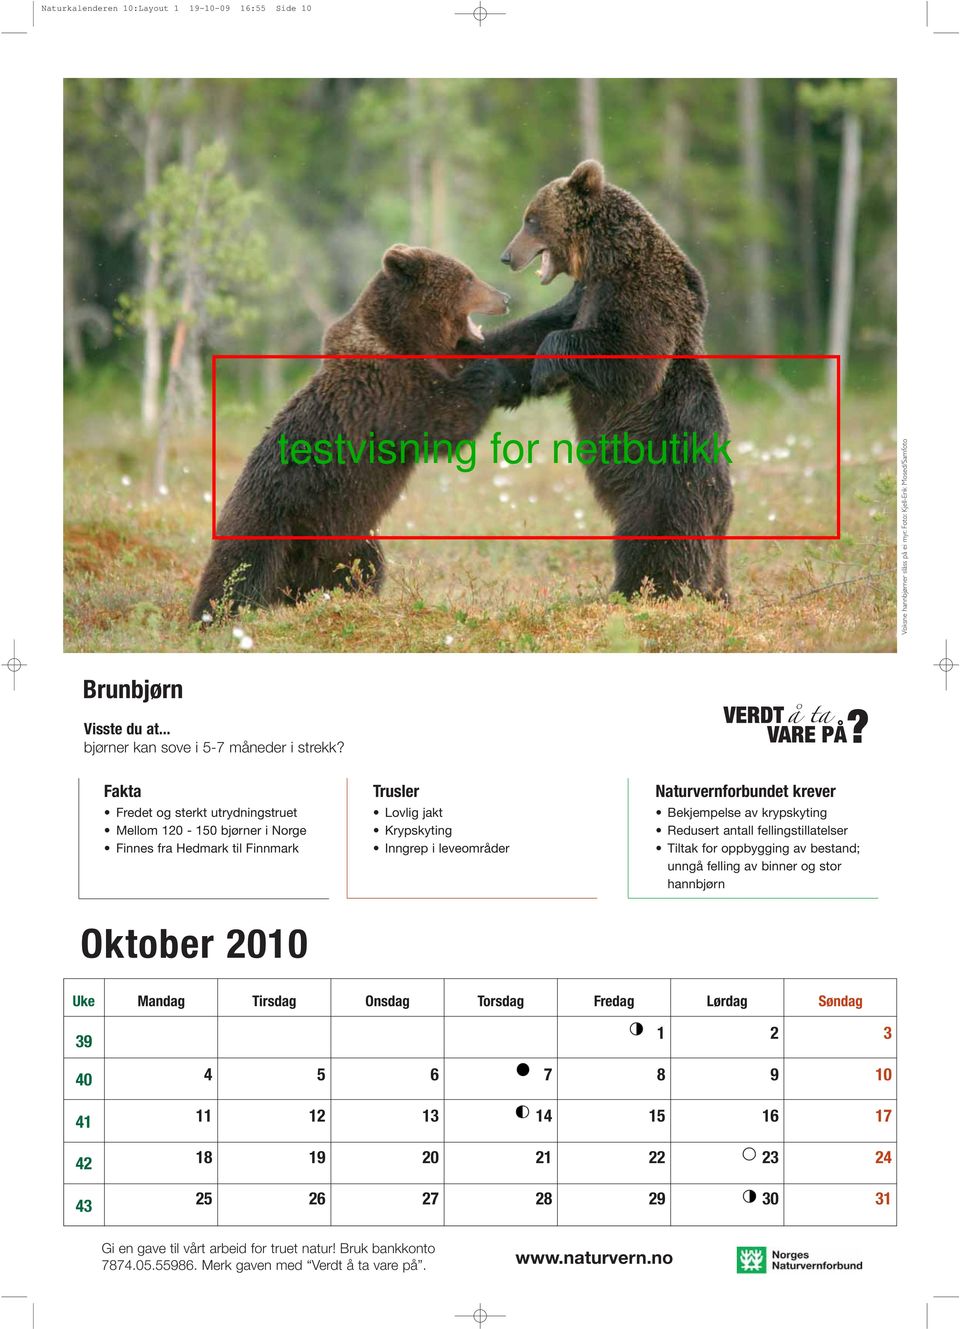 Fredet og sterkt utrydningstruet Mellom 0-0 bjørner i Norge Finnes fra Hedmark til Finnmark Lovlig jakt Krypskyting